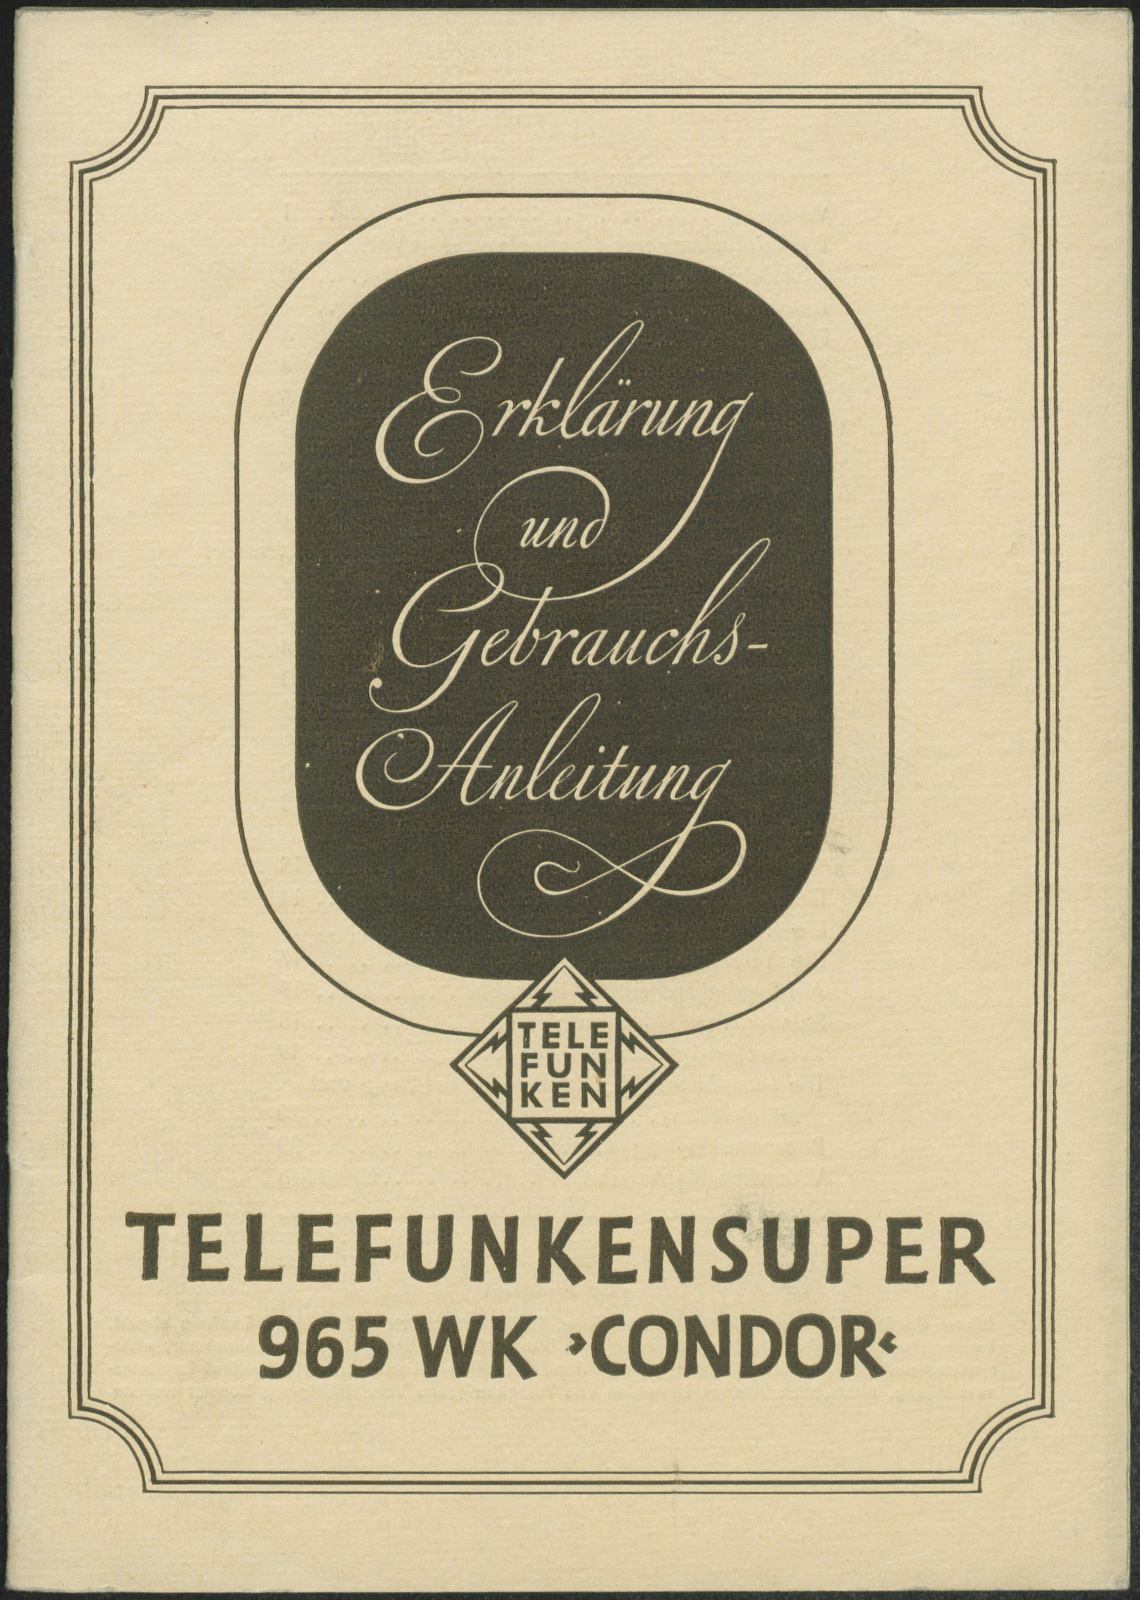 Bedienungsanleitung: Erklärung und Gebrauchsanleitung Telefunkensuper 965 WK Condor (Stiftung Deutsches Technikmuseum Berlin CC0)